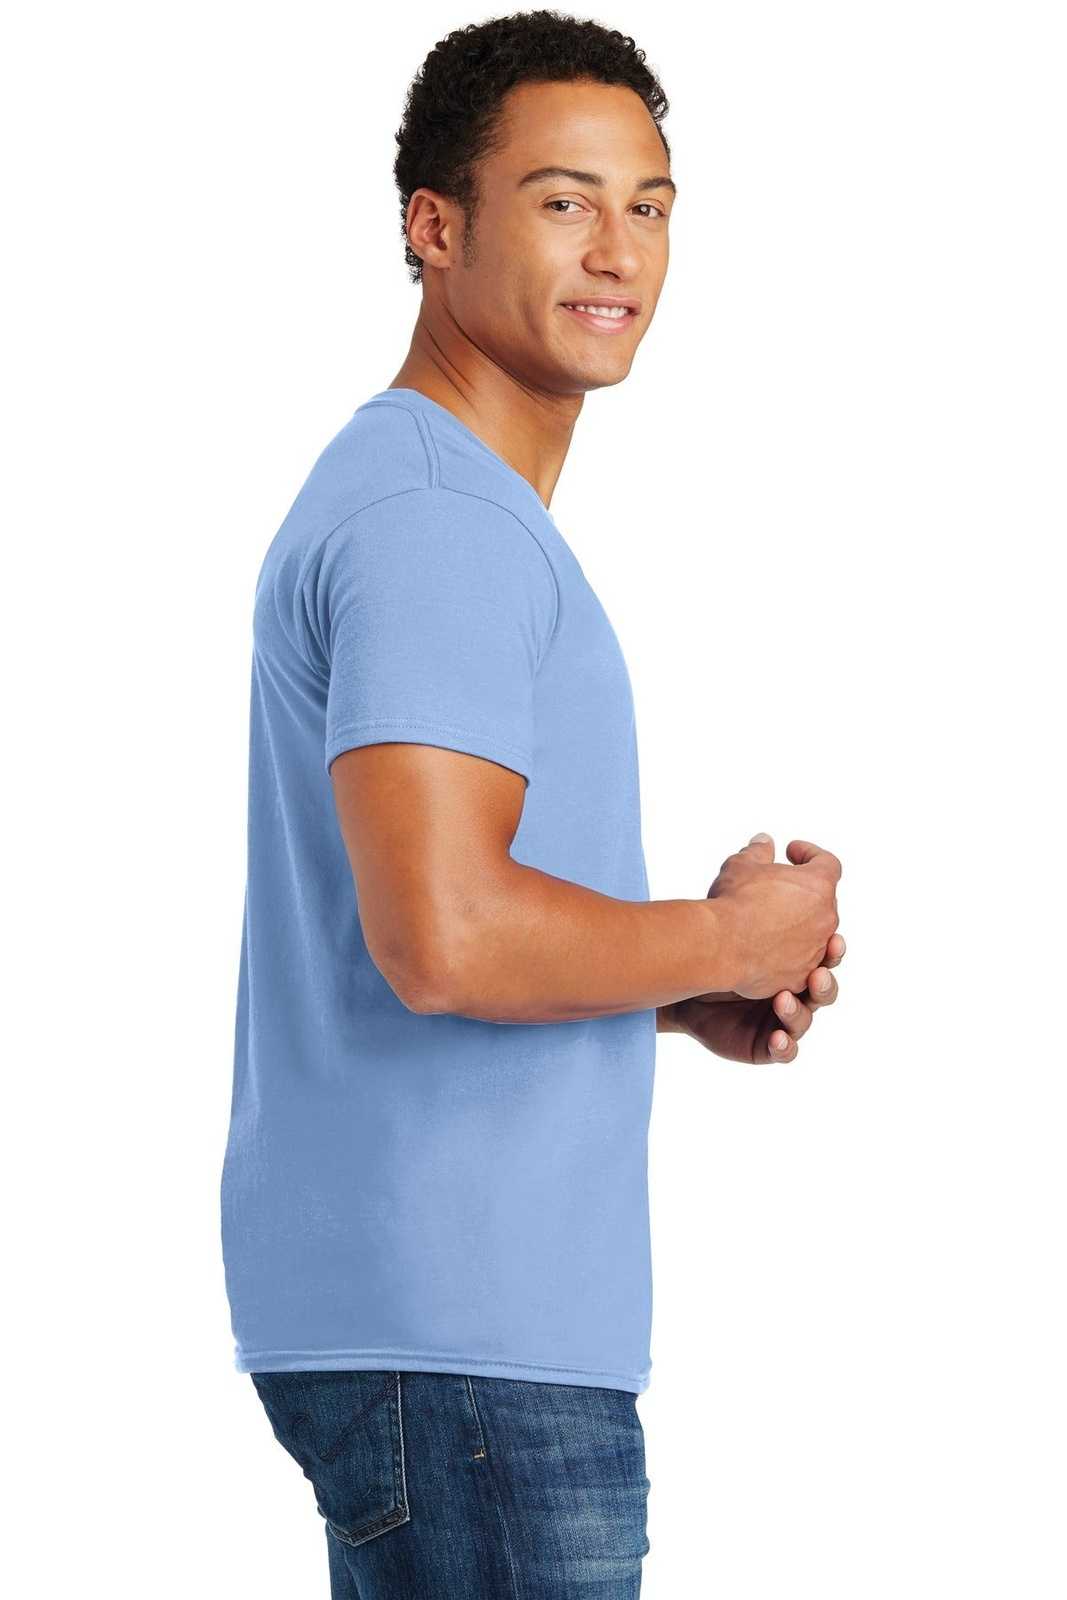 Hanes 4980 Nano-T Cotton T-Shirt - Light Blue - HIT a Double